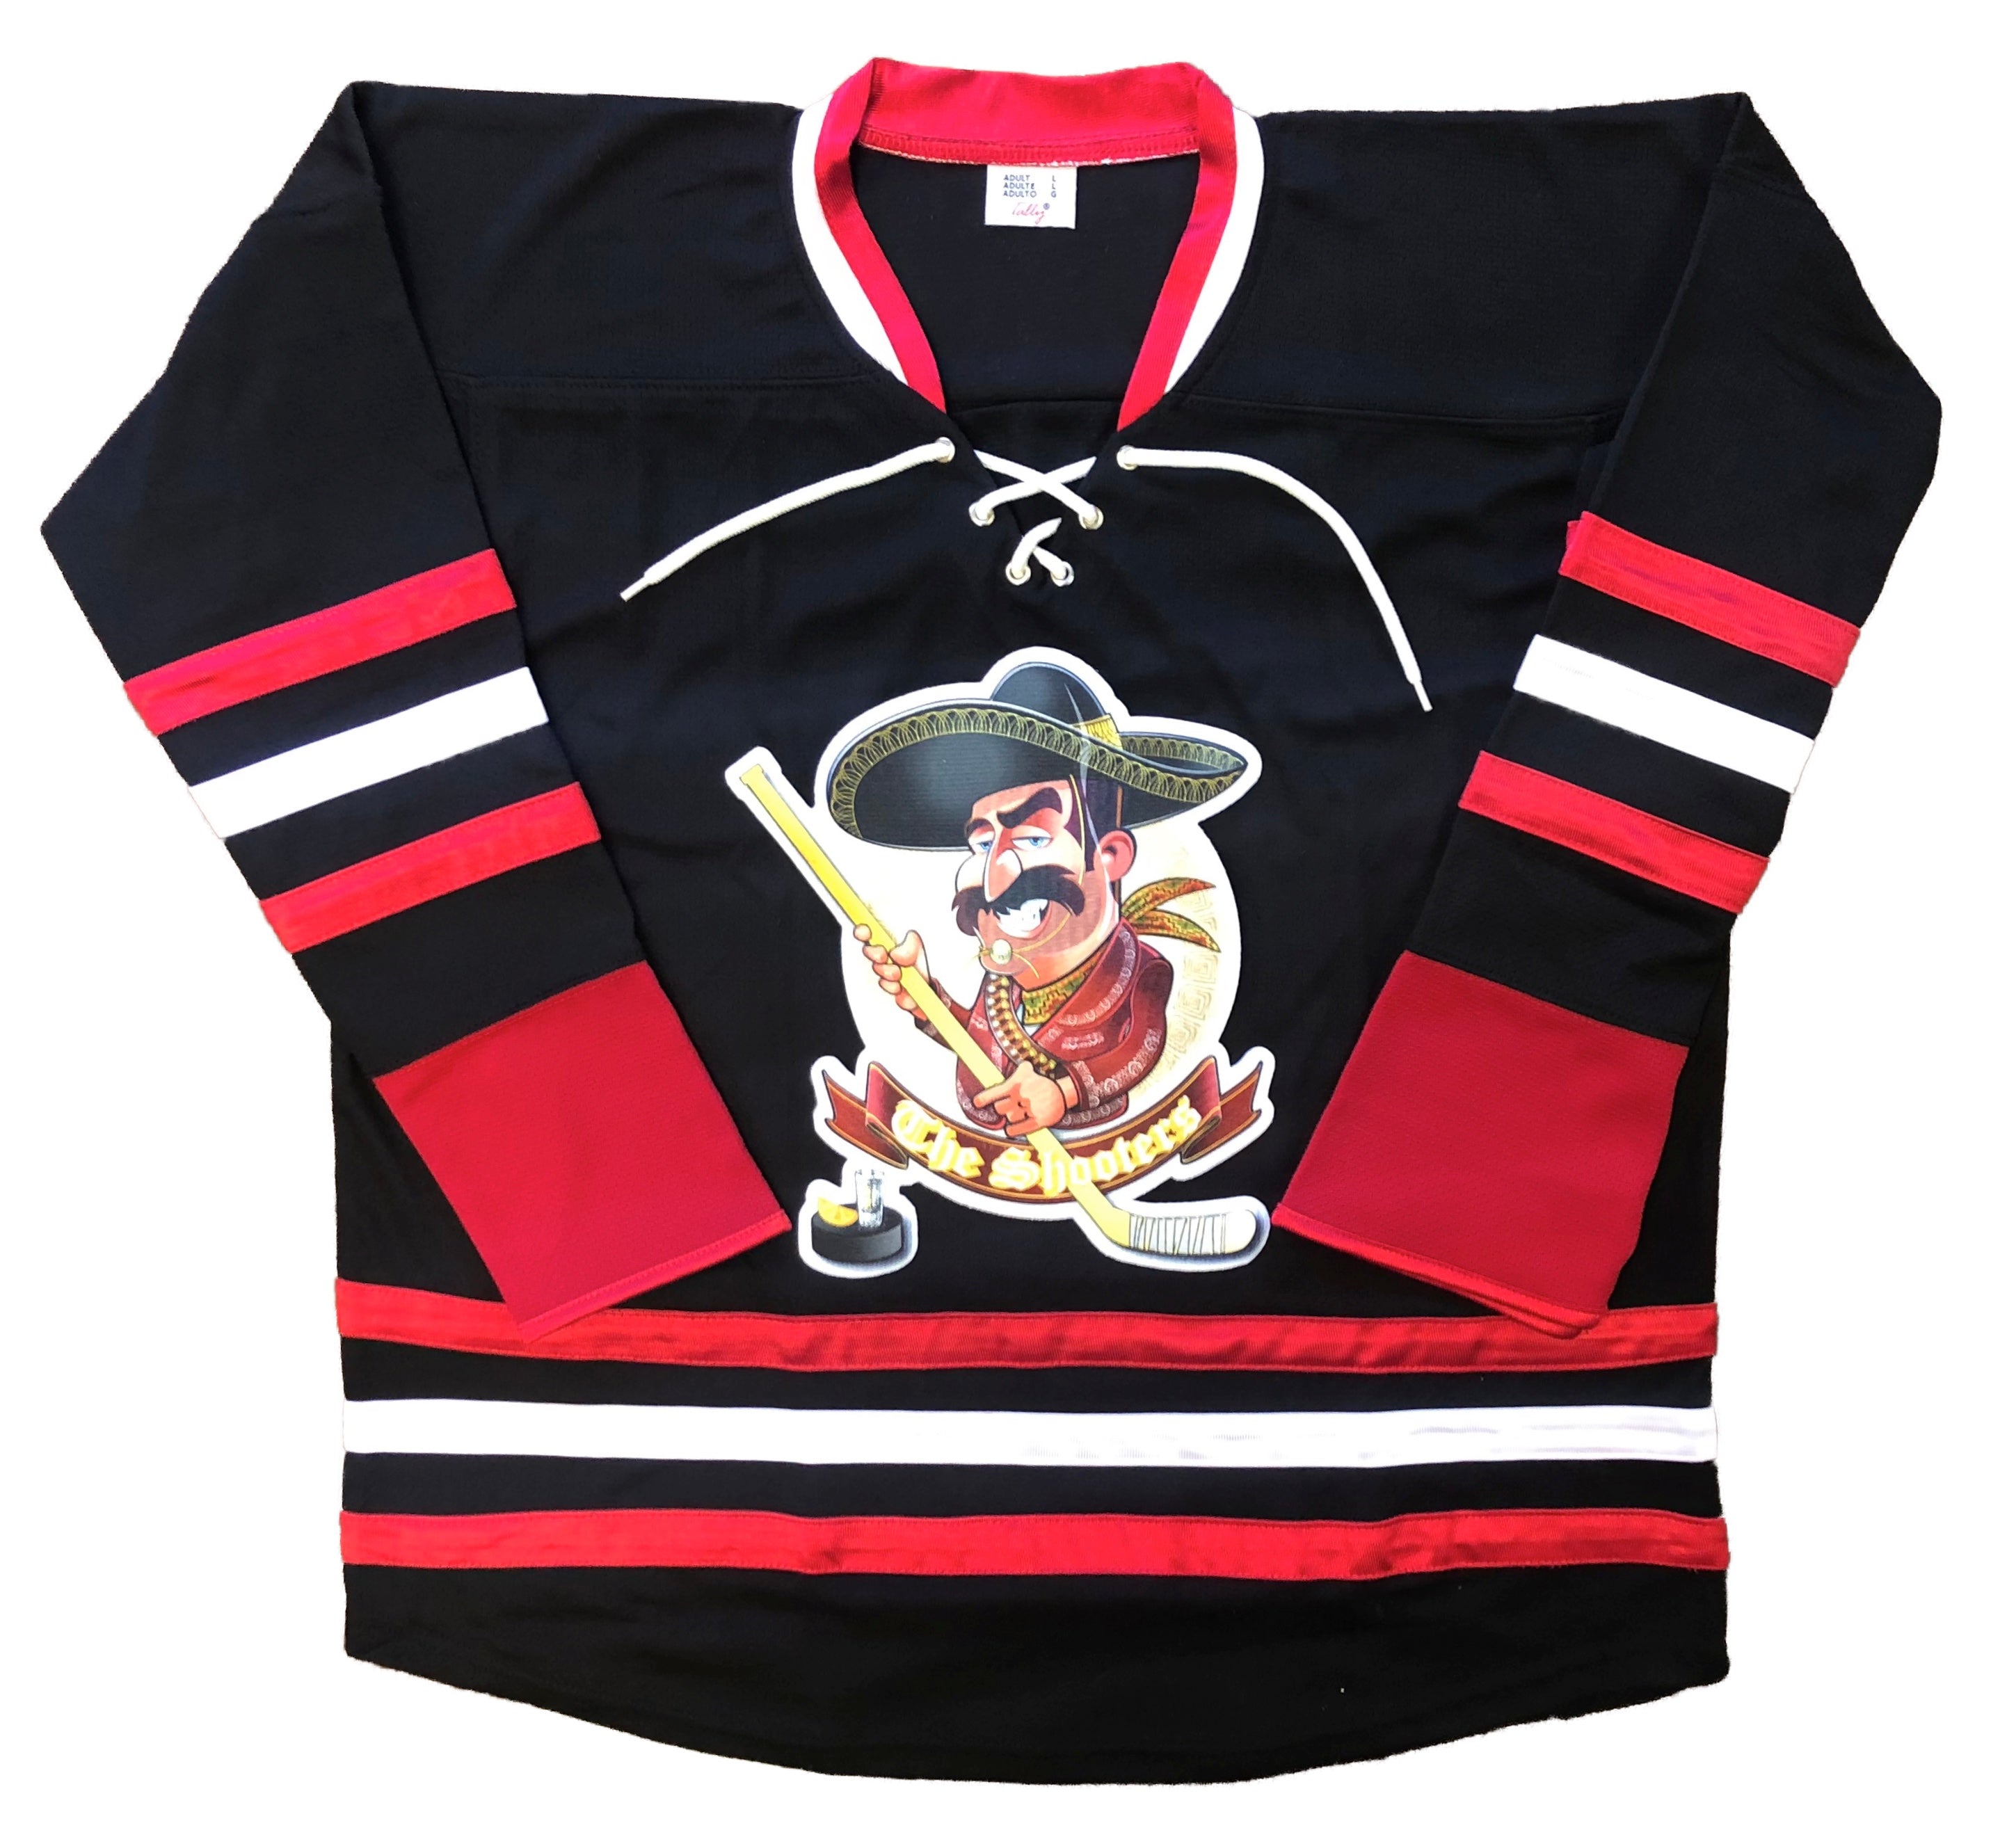 Custom Hockey Jerseys with the Johnny Canuck Twill Logo